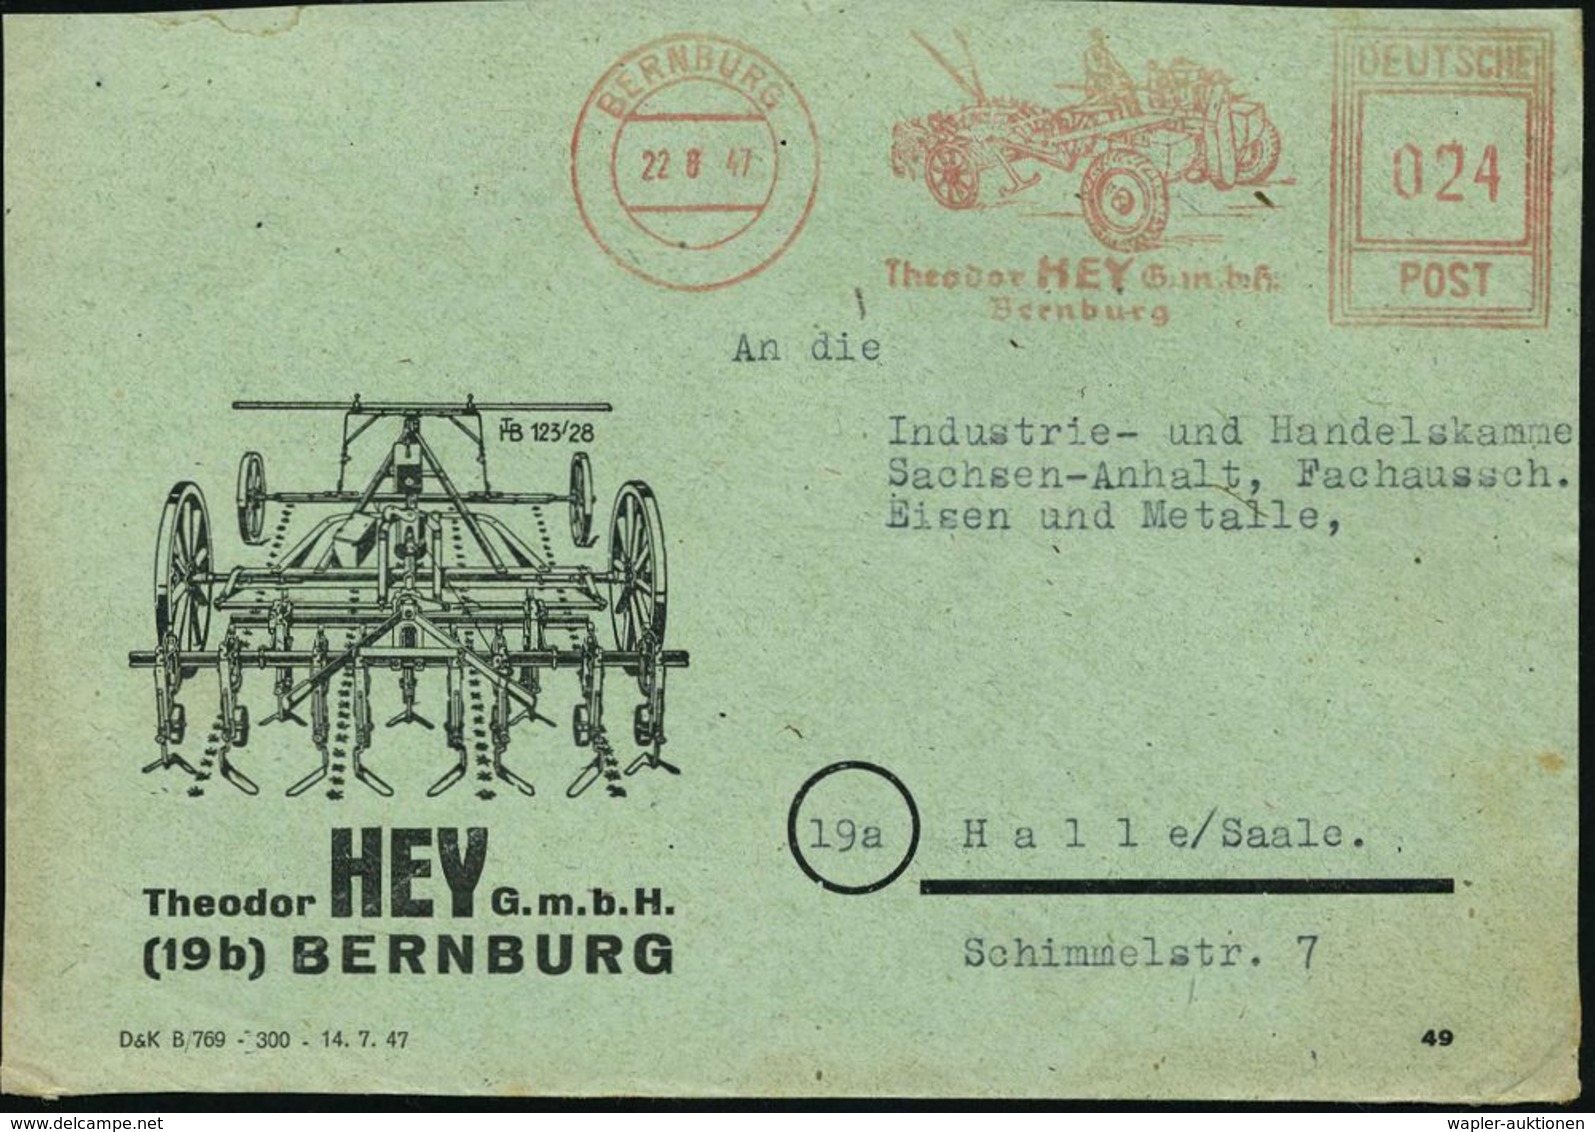 TRAKTOR / RAUPENSCHLEPPER : BERNBURG/ Theodor HEY GmbH 1947 (22.6.) Seltener AFS-Typ "Hochrechteck" (Spezial-Traktor) Au - Automobili